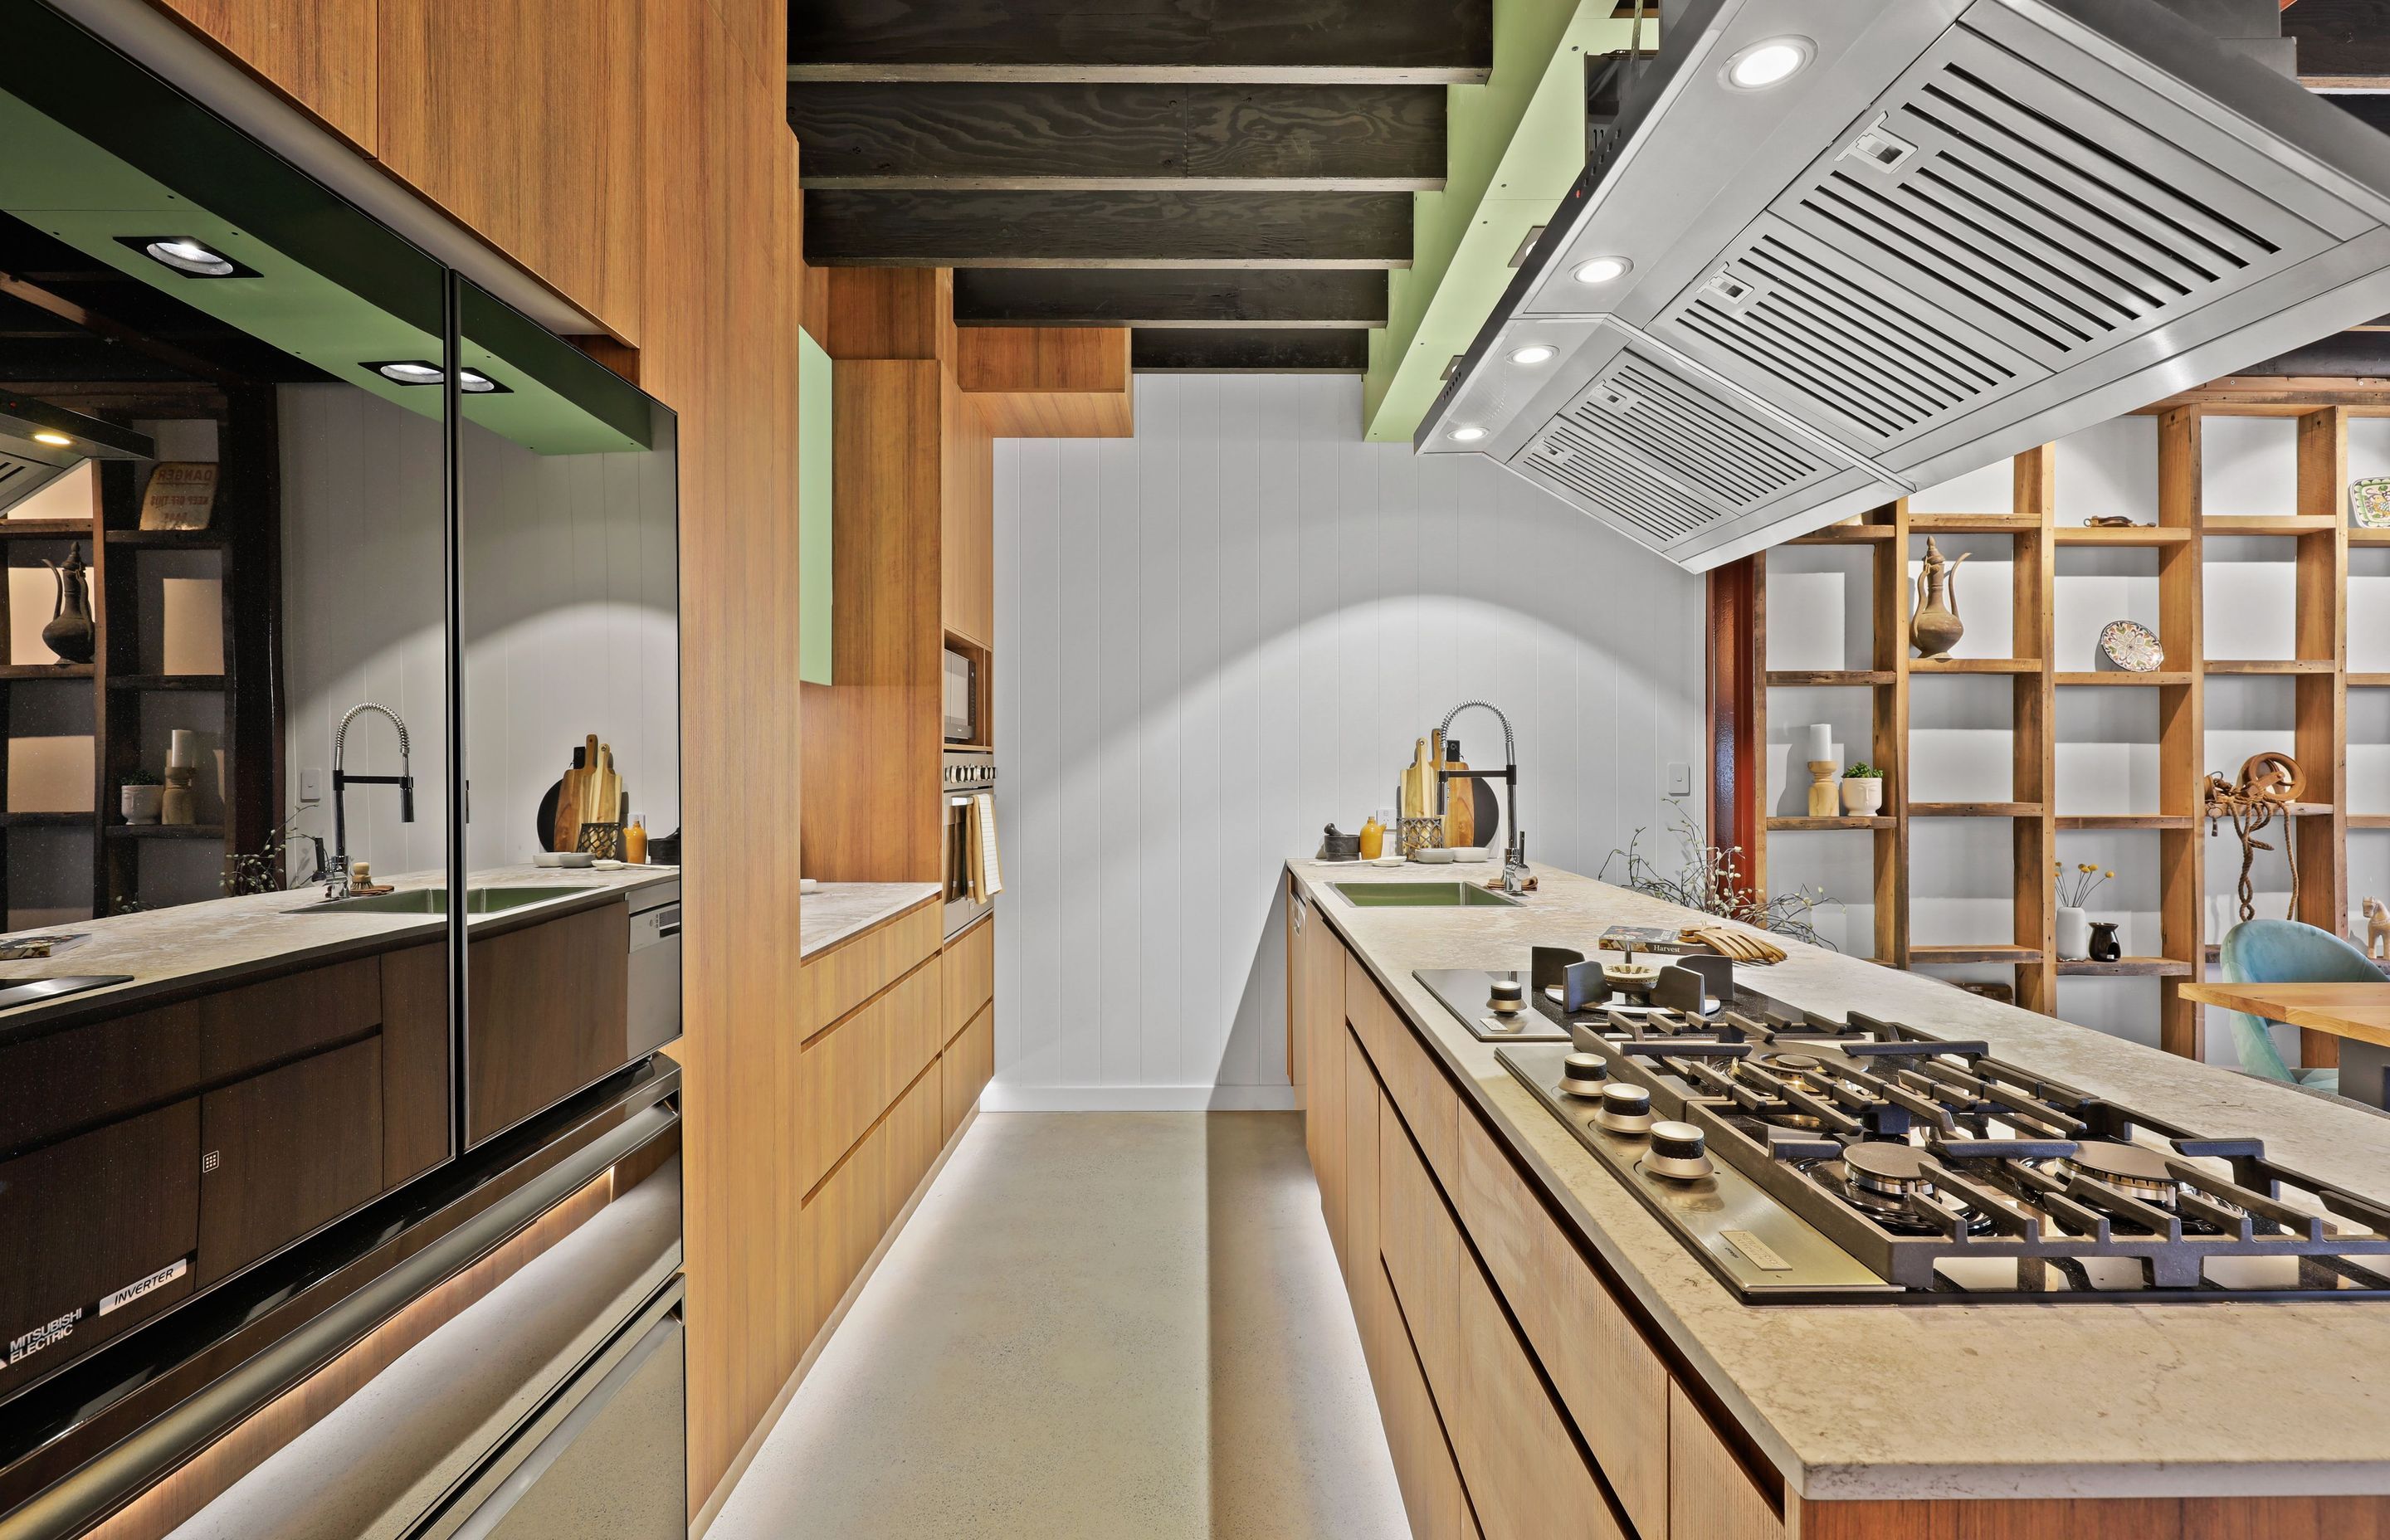 Warm woodgrain kitchen by JPC Kitchens